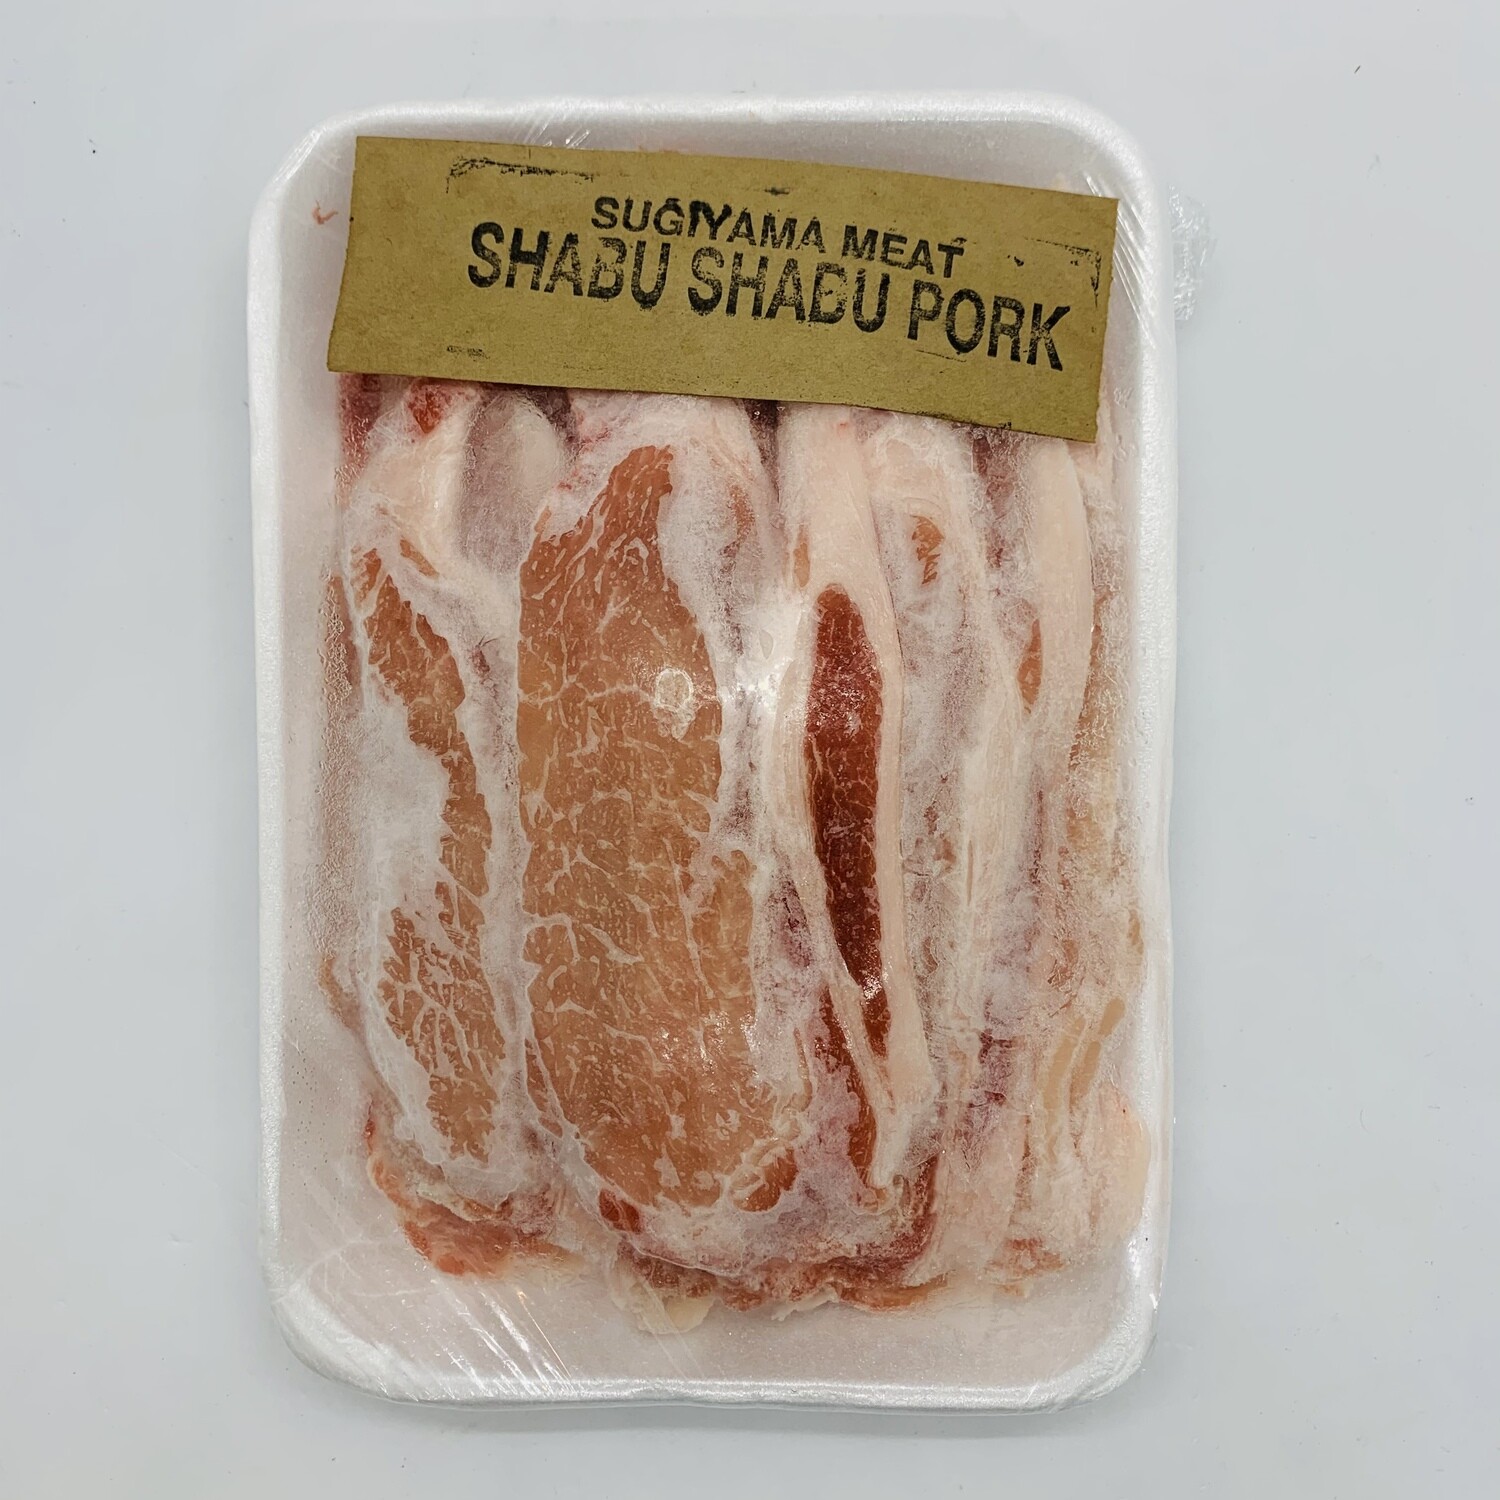 SUGIYAMA Pork ShabuShabu 1Lb